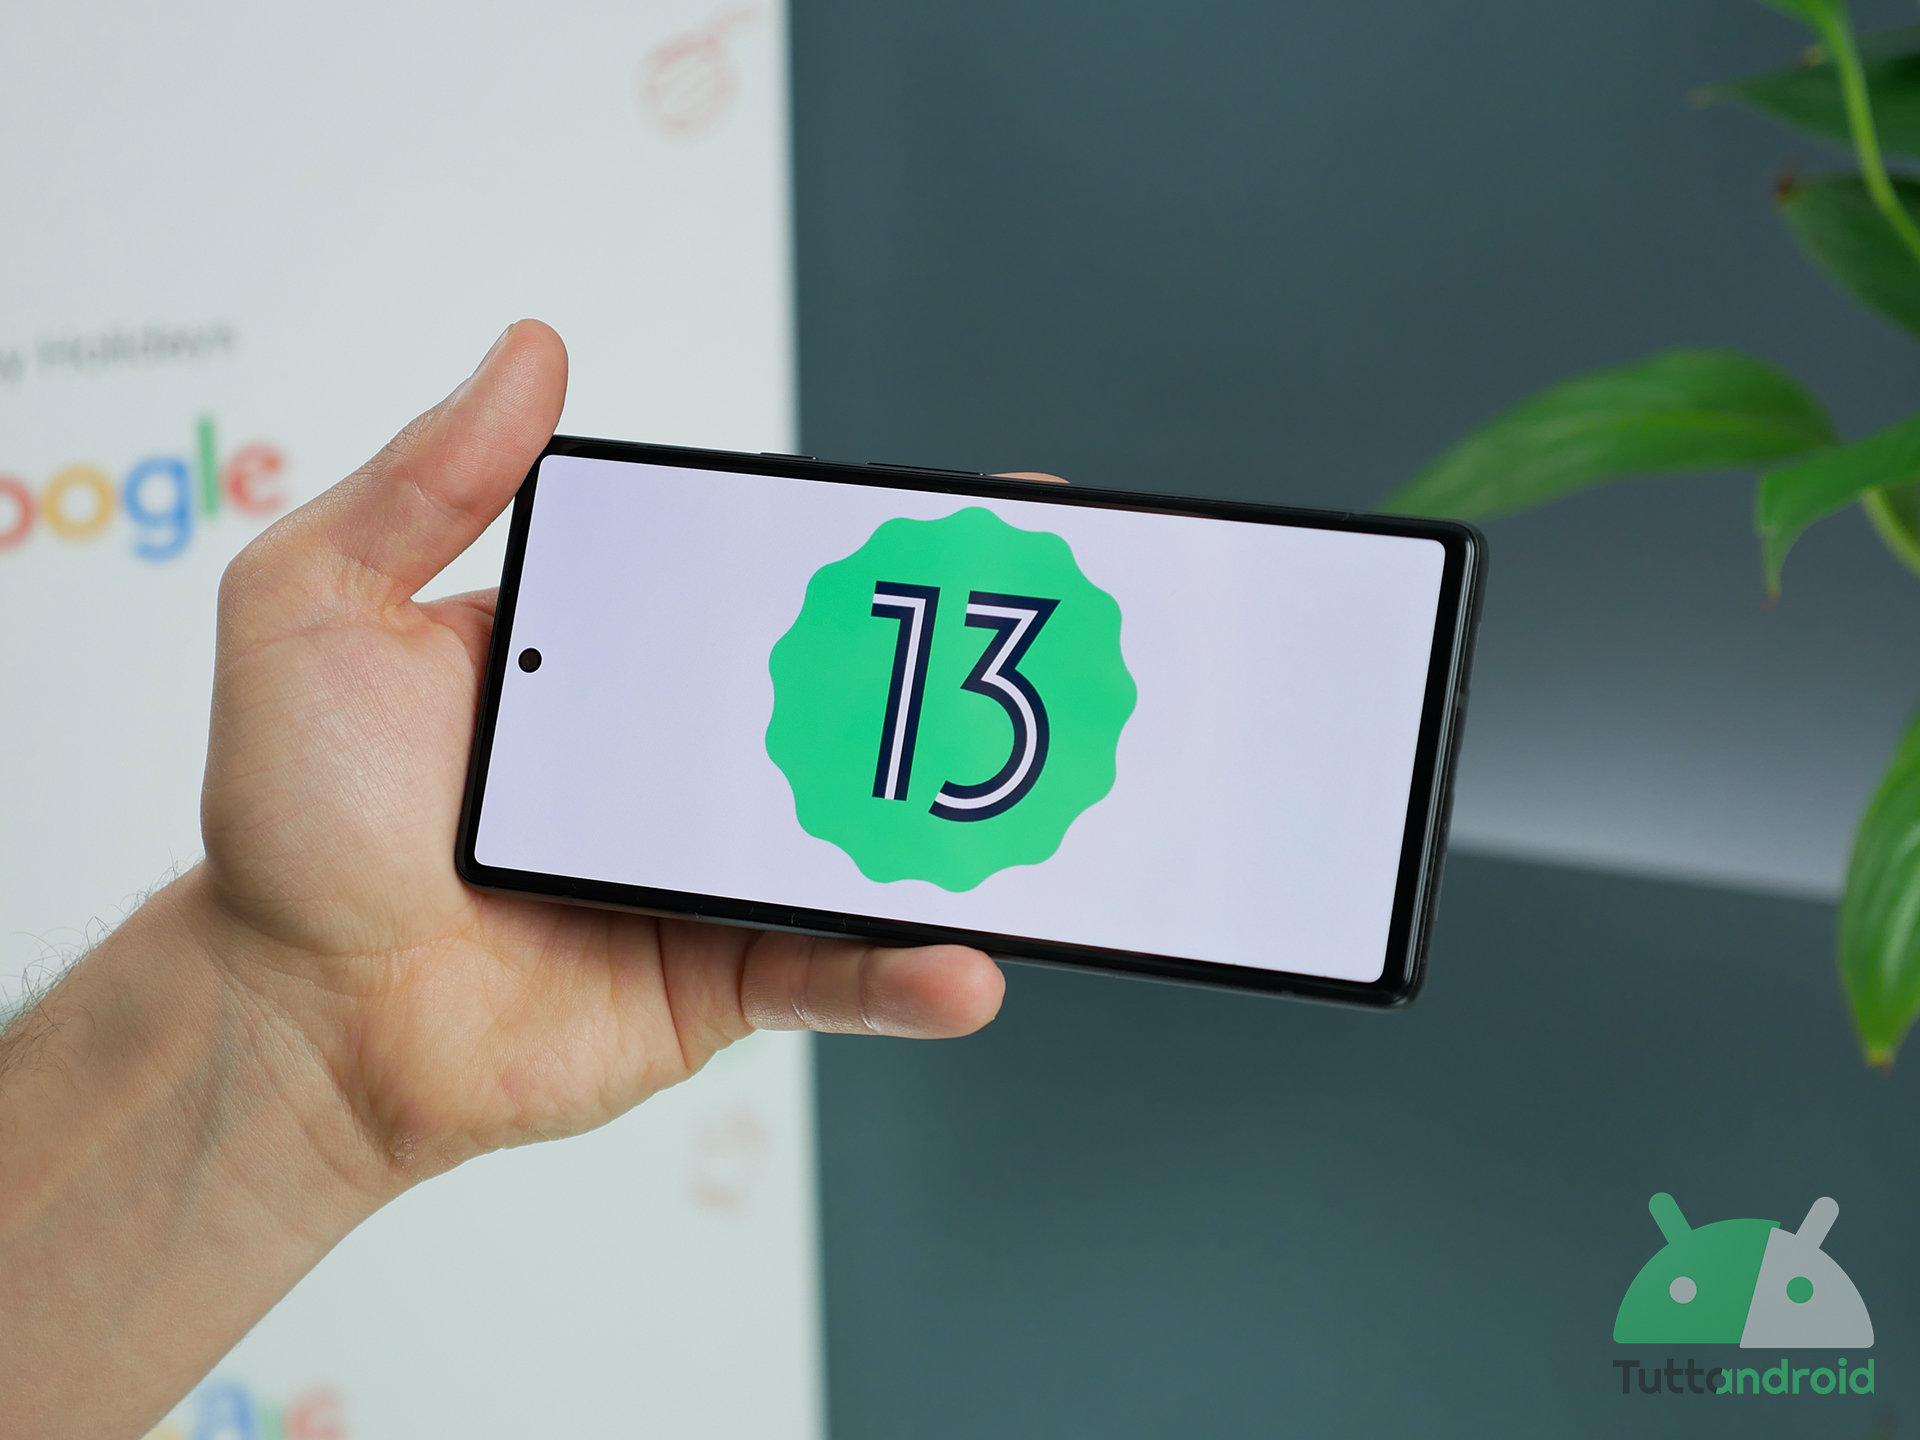 Android 13 ufficiale e disponibile per i Pixel, ecco le principali novità